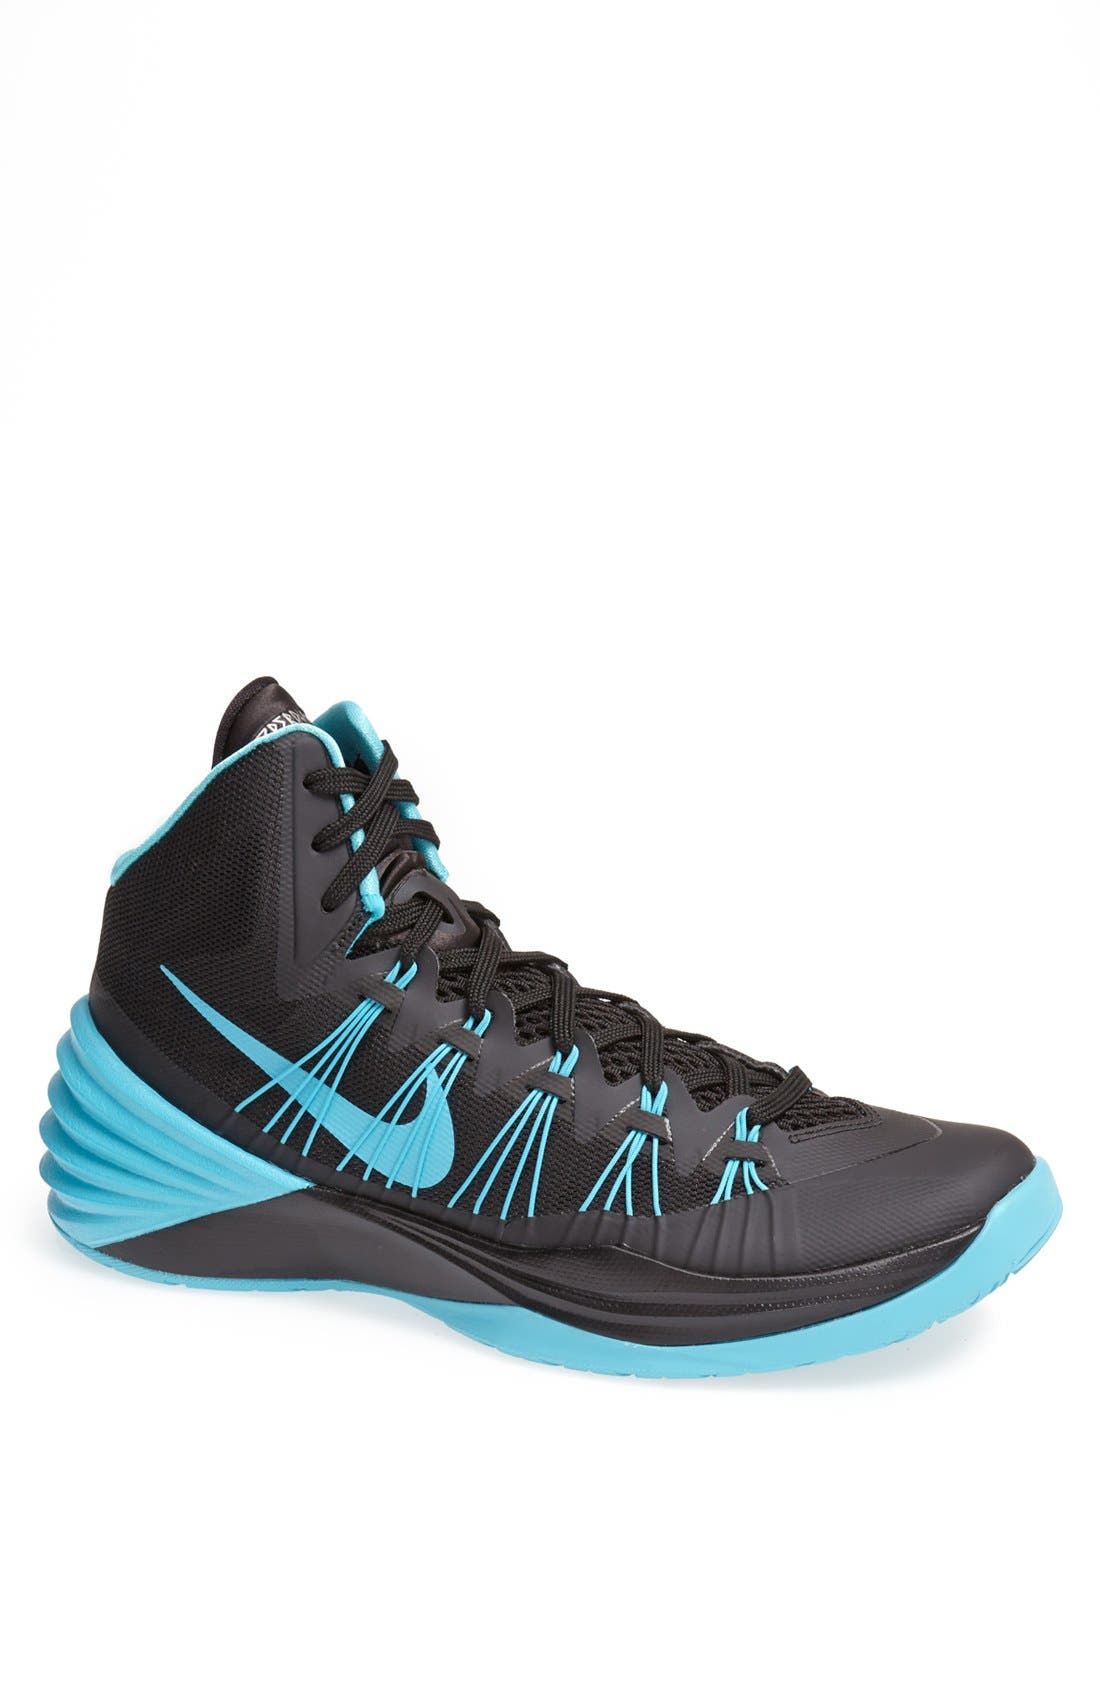 Nike 'Hyperdunk 2013' Basketball Shoe 